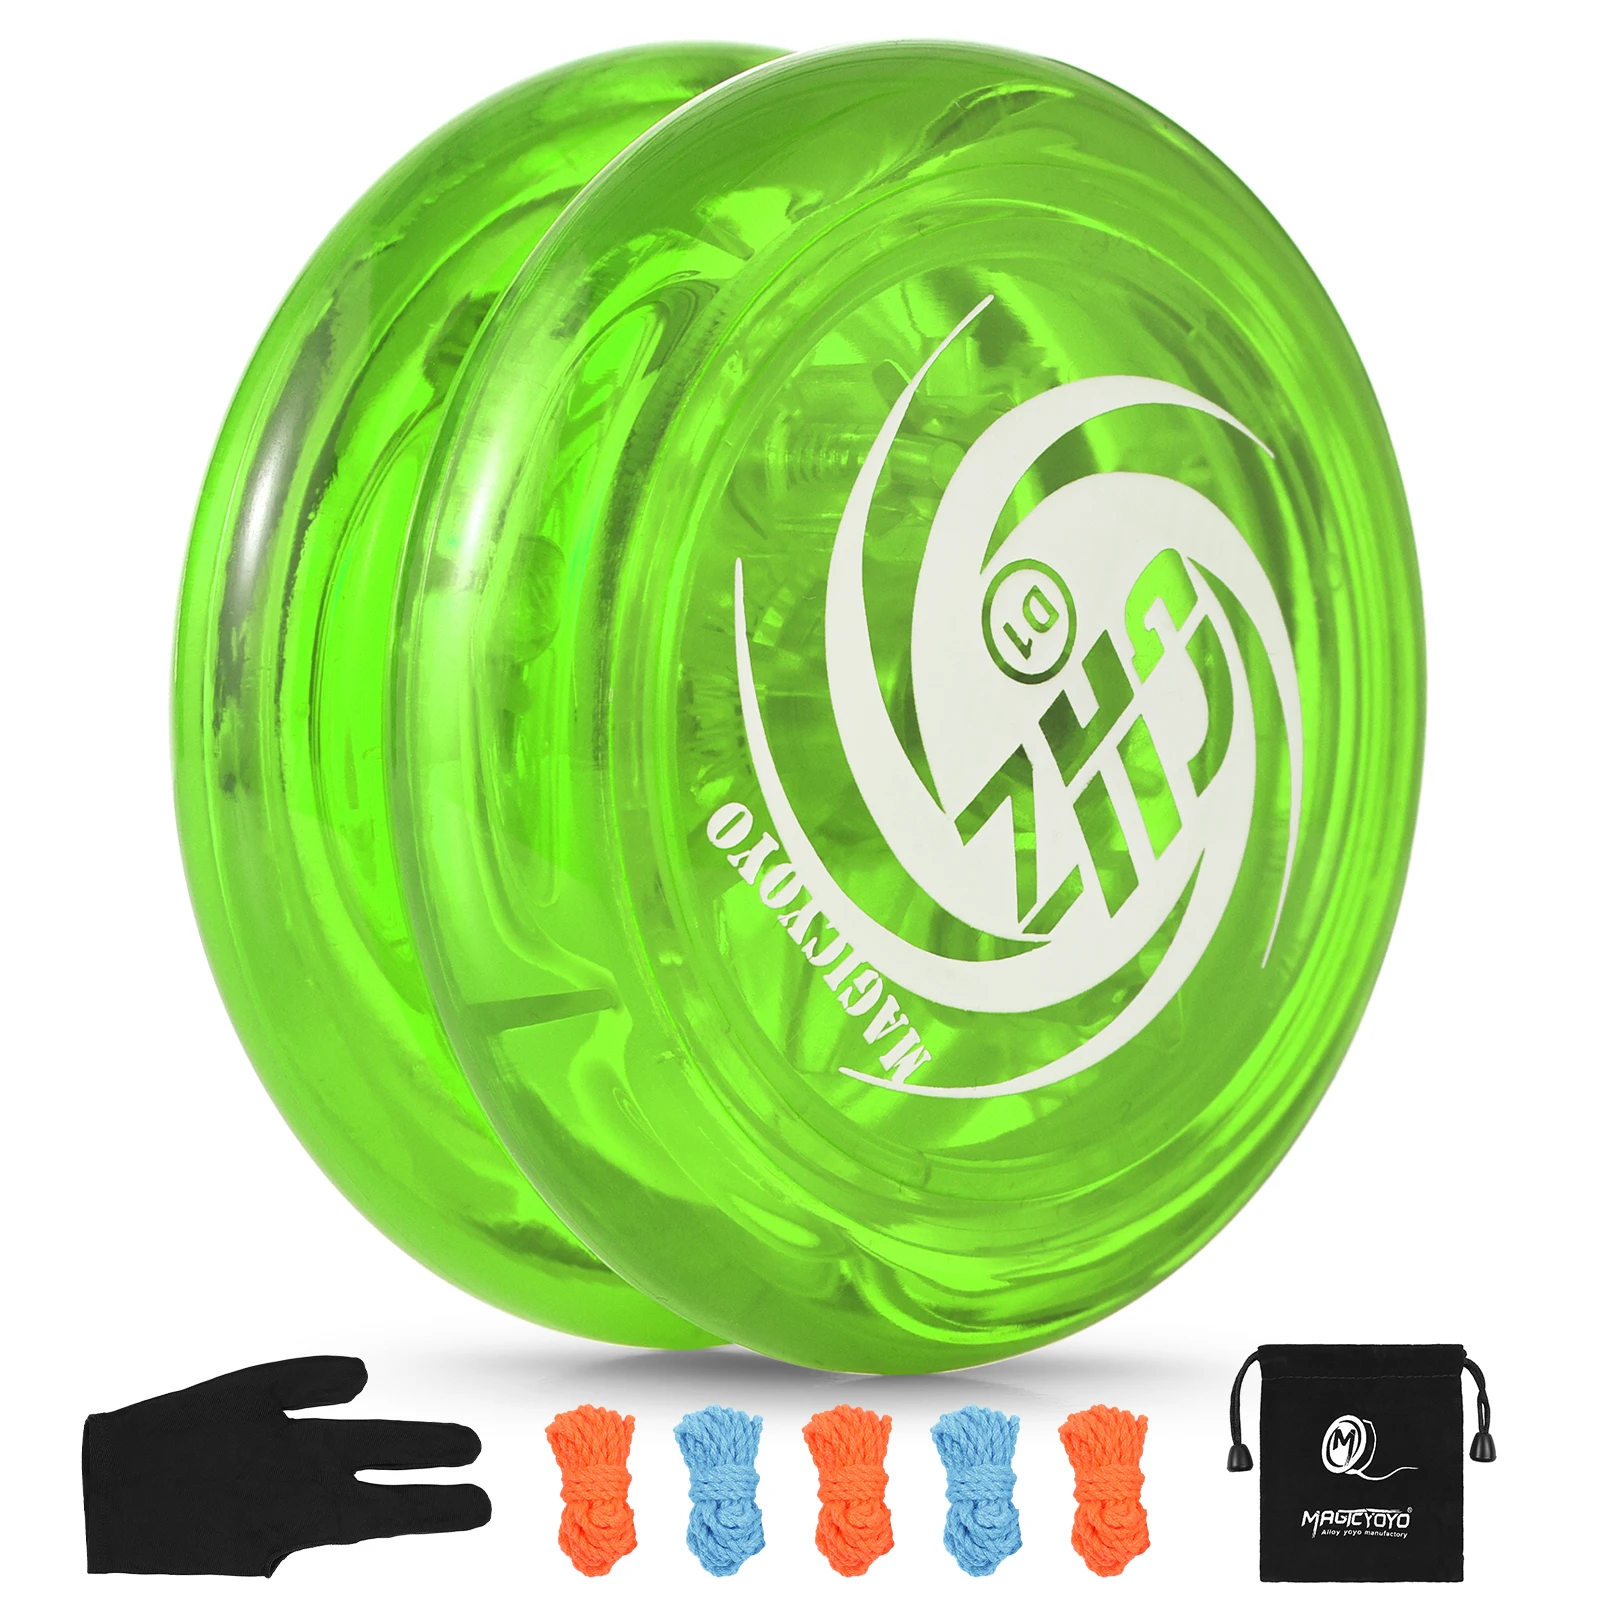 

Йо-Йо для детей, мяч Йо-Йо с 5 сменными нитями, сумка для хранения перчаток для начинающих, развлекательные игрушки